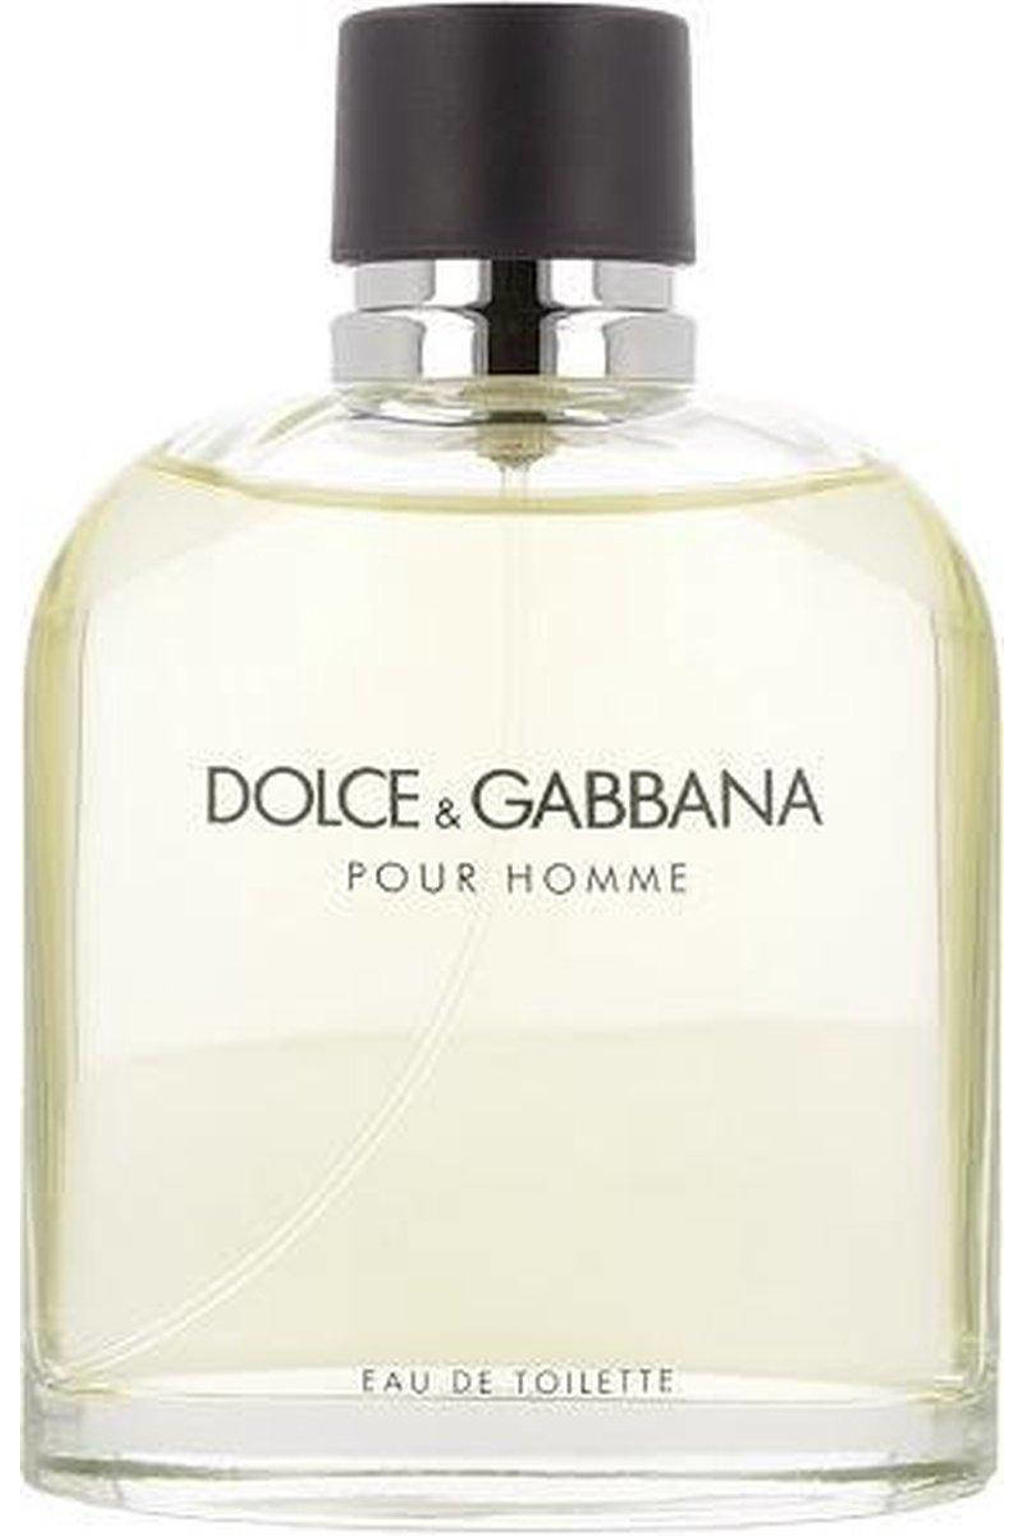 Dolce & Gabbana Pour Homme eau de toilette - 200 ml